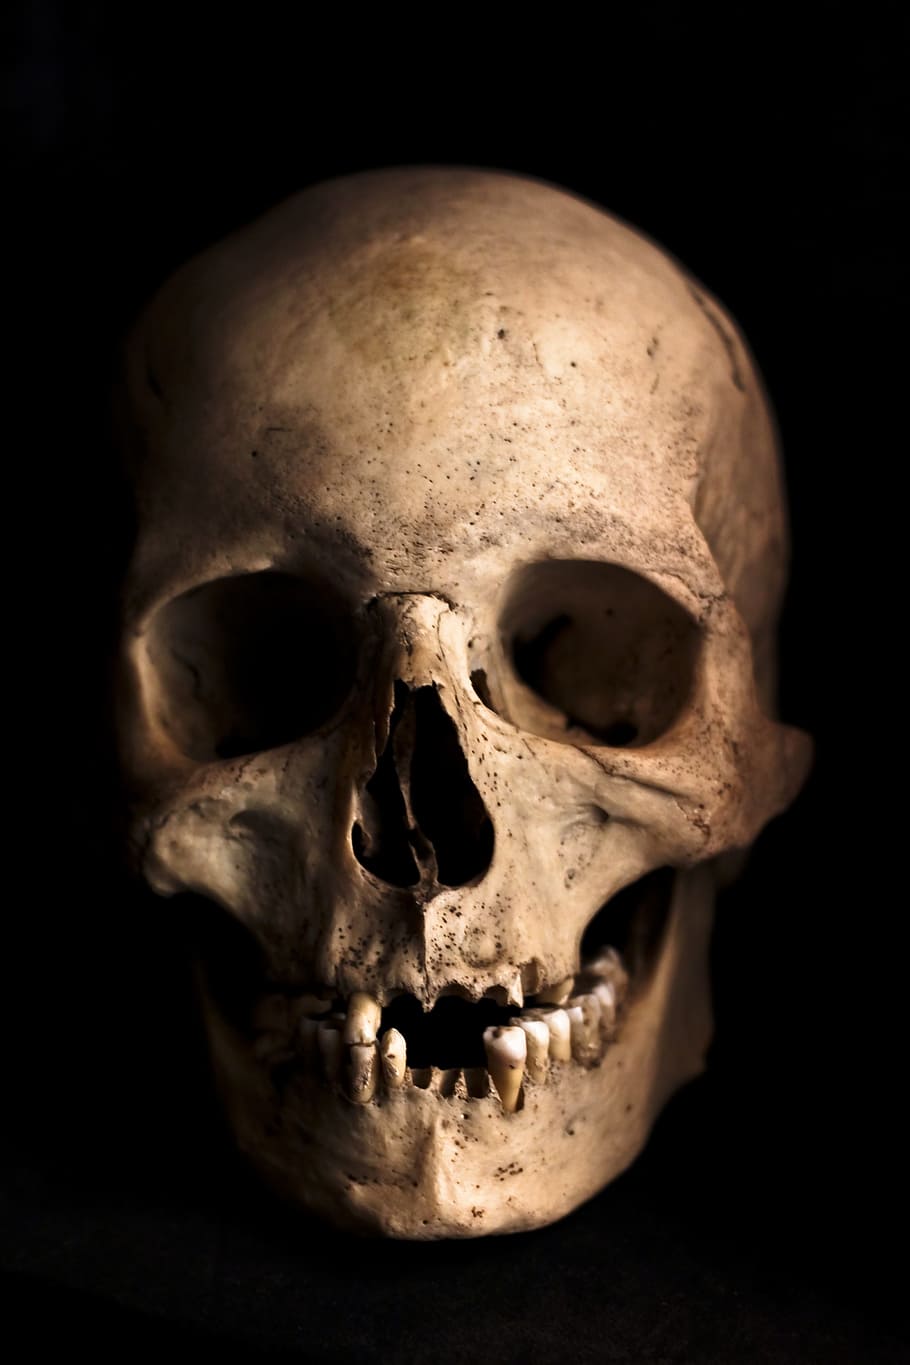 人間の頭蓋骨の写真, 頭蓋骨, 人間, 頭, 骨格, 骨, ホラー, 解剖学, ハロウィーン, 死